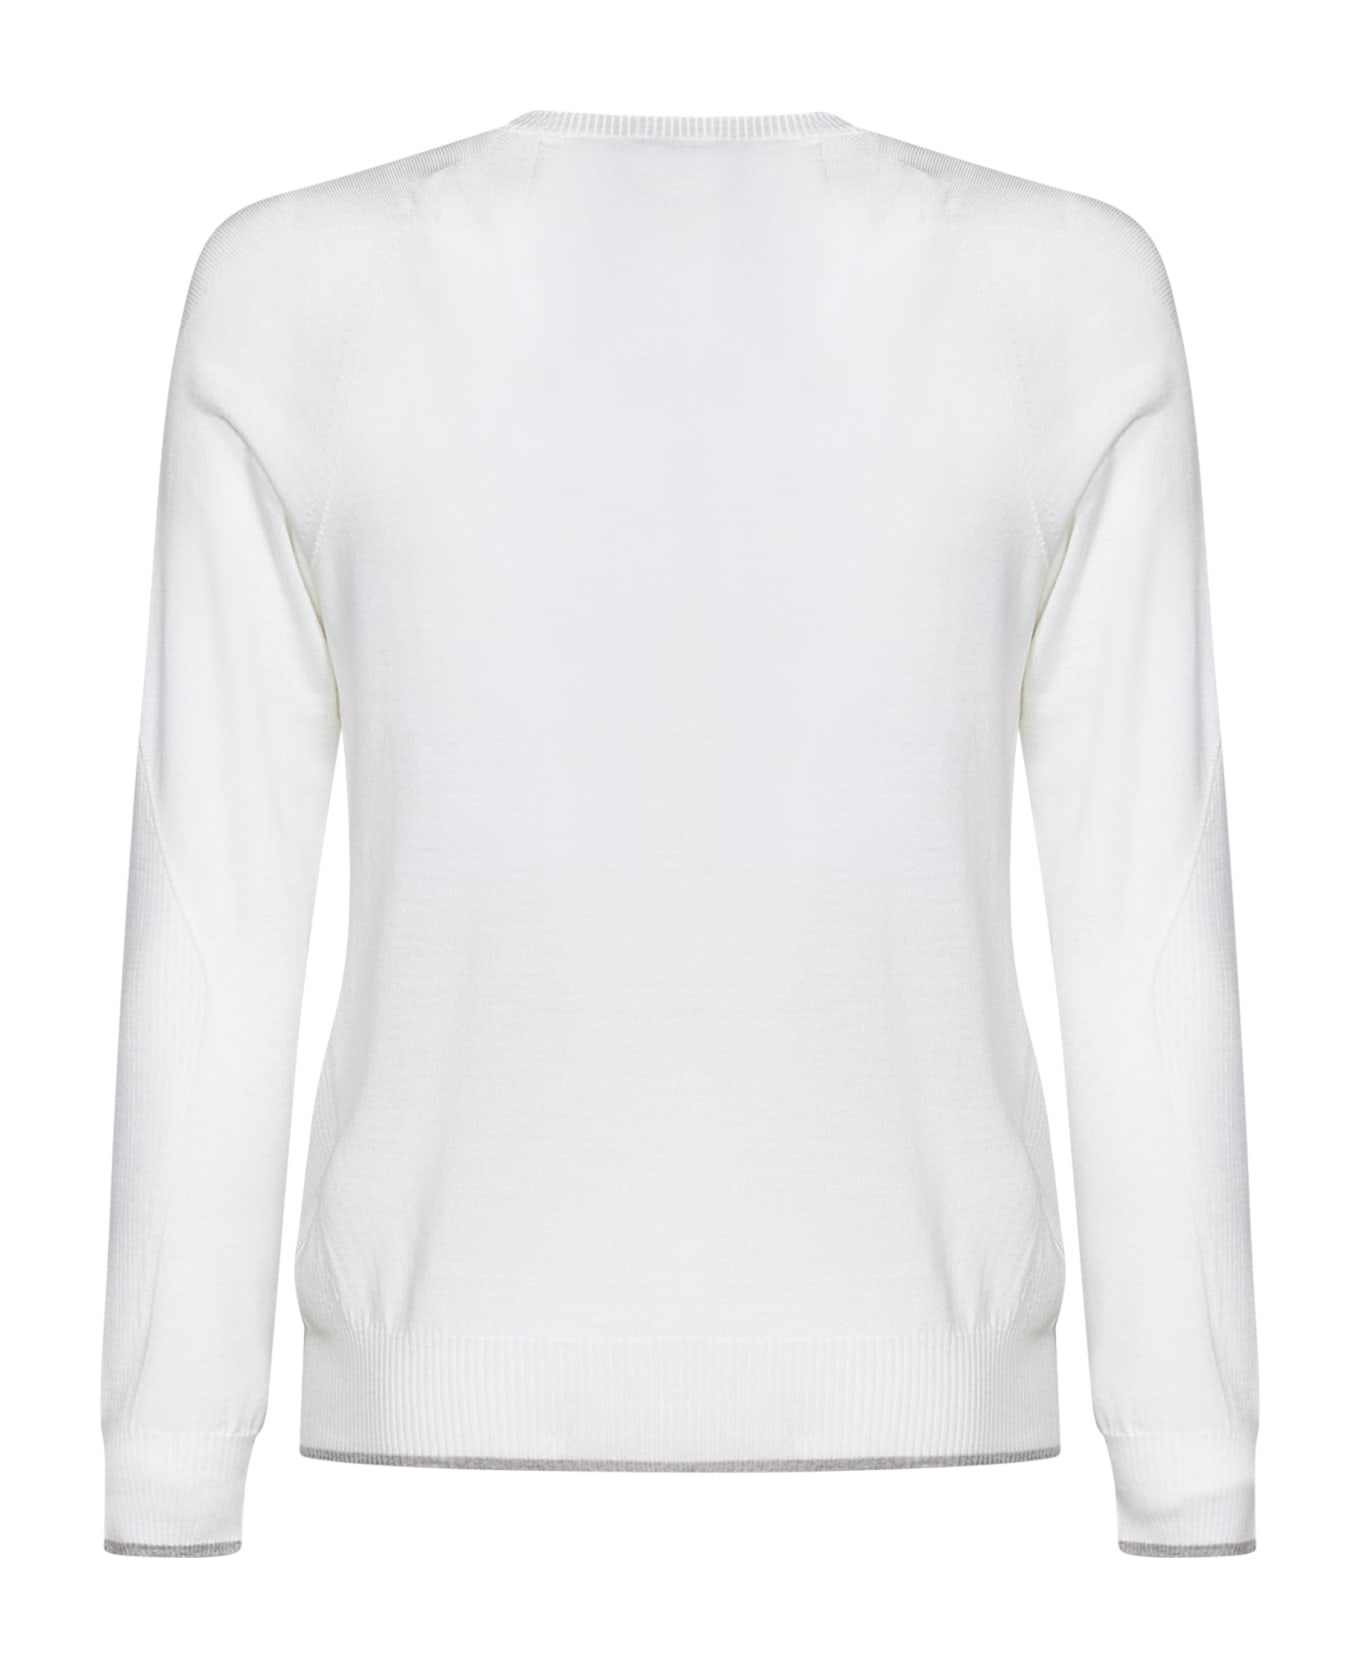 Sease Whole Round Summer Sweater - White ニットウェア